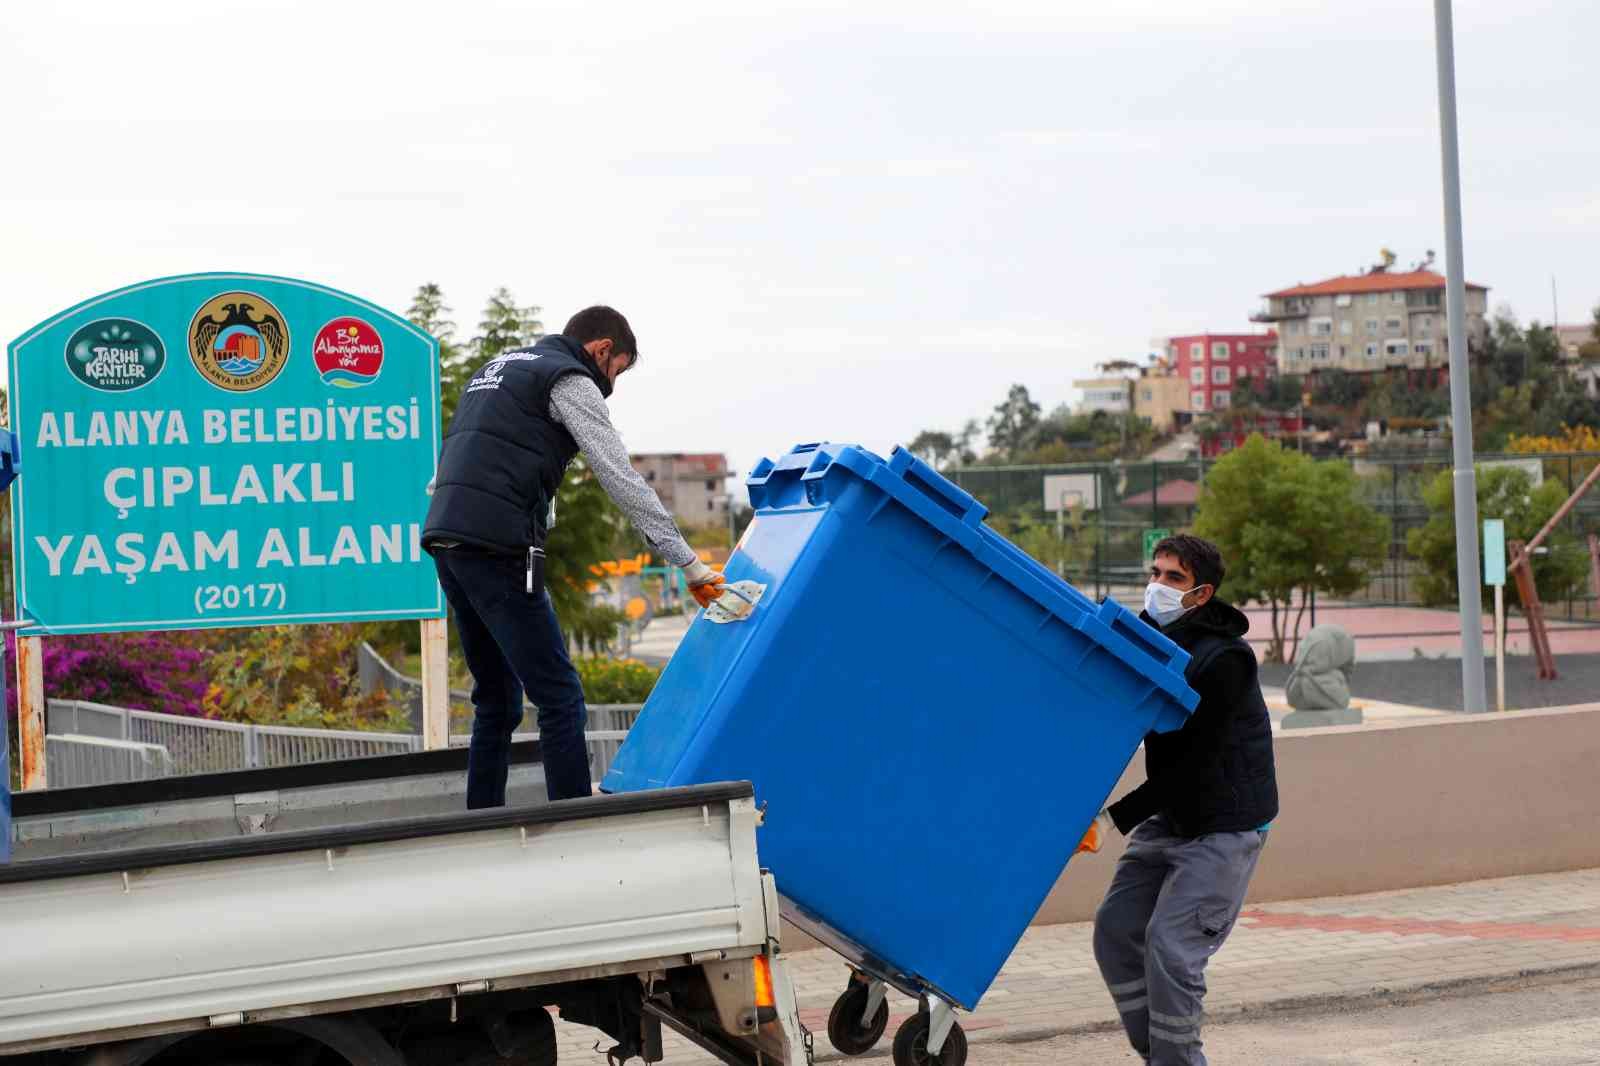 Alanya’da 150 adet sıfır atık konteyneri dağıtıldı #antalya